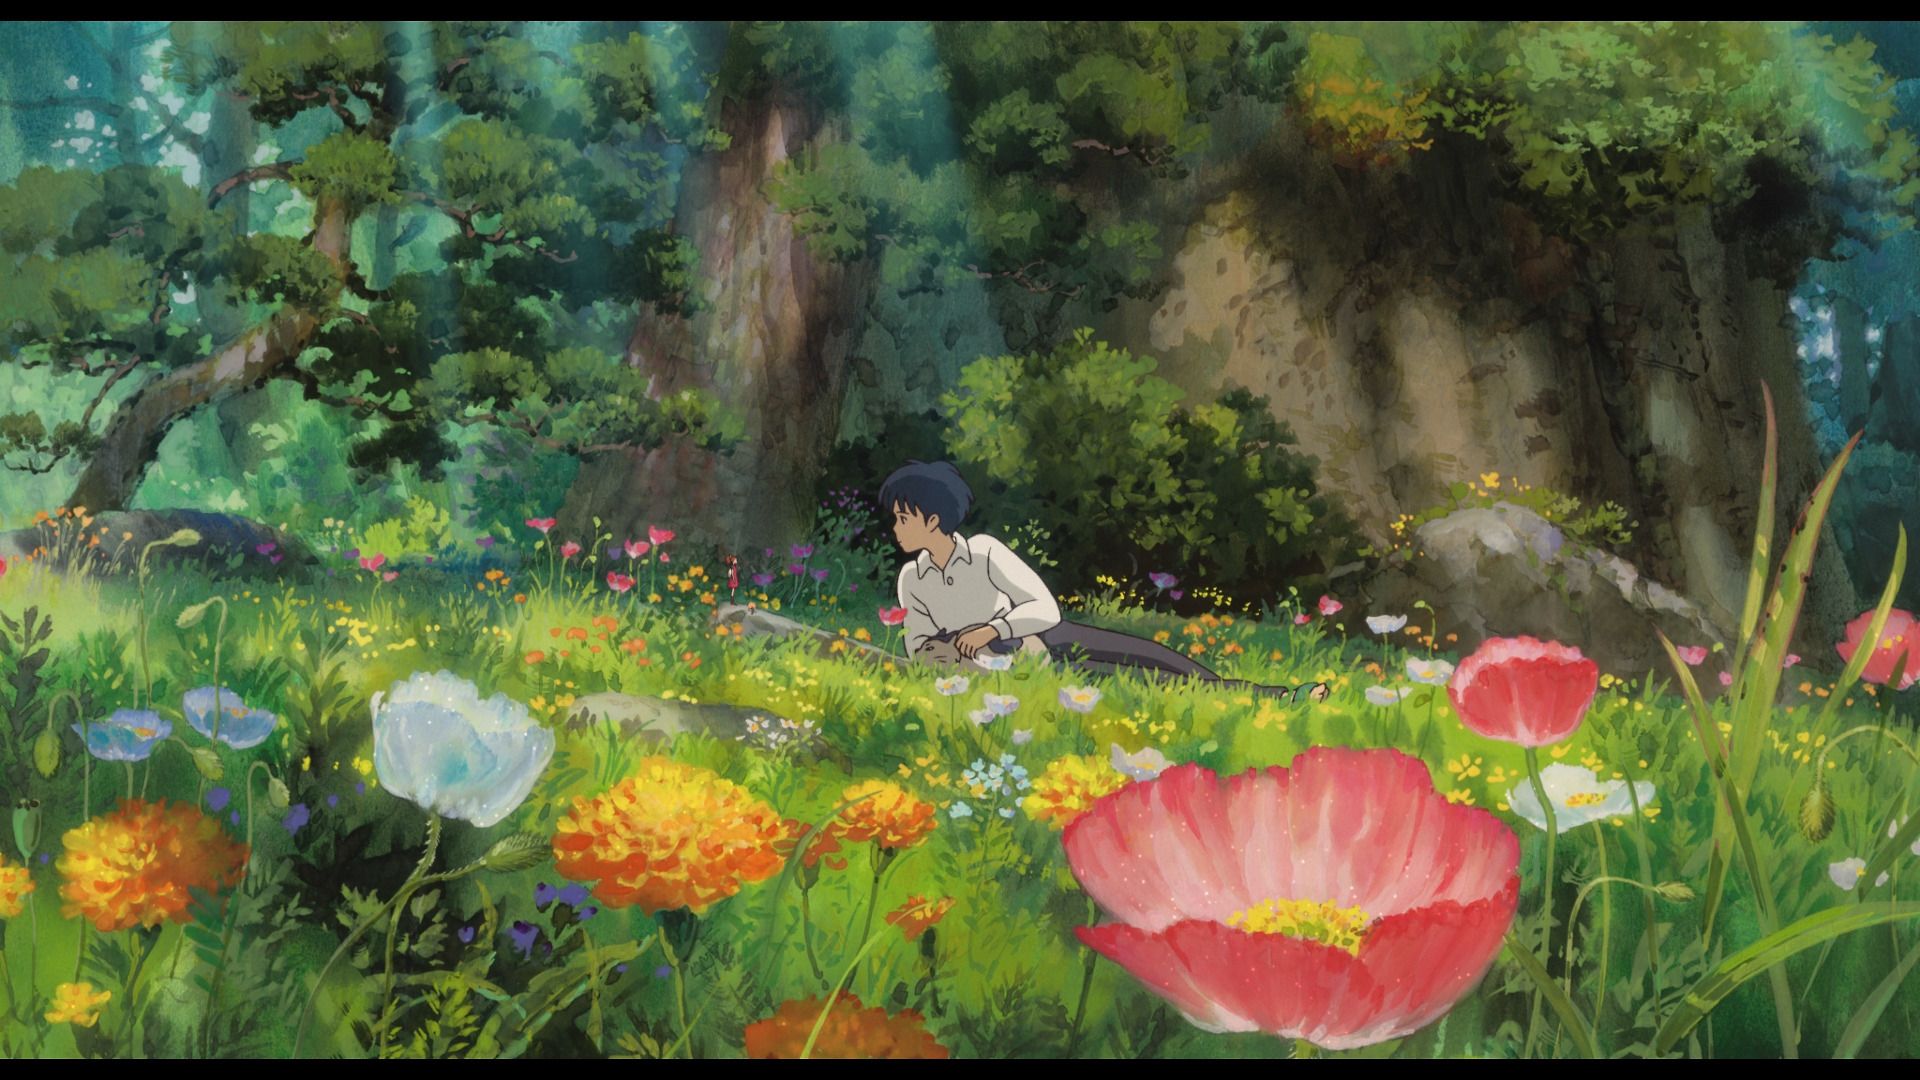 Ghibli Aesthetic On Tumblr